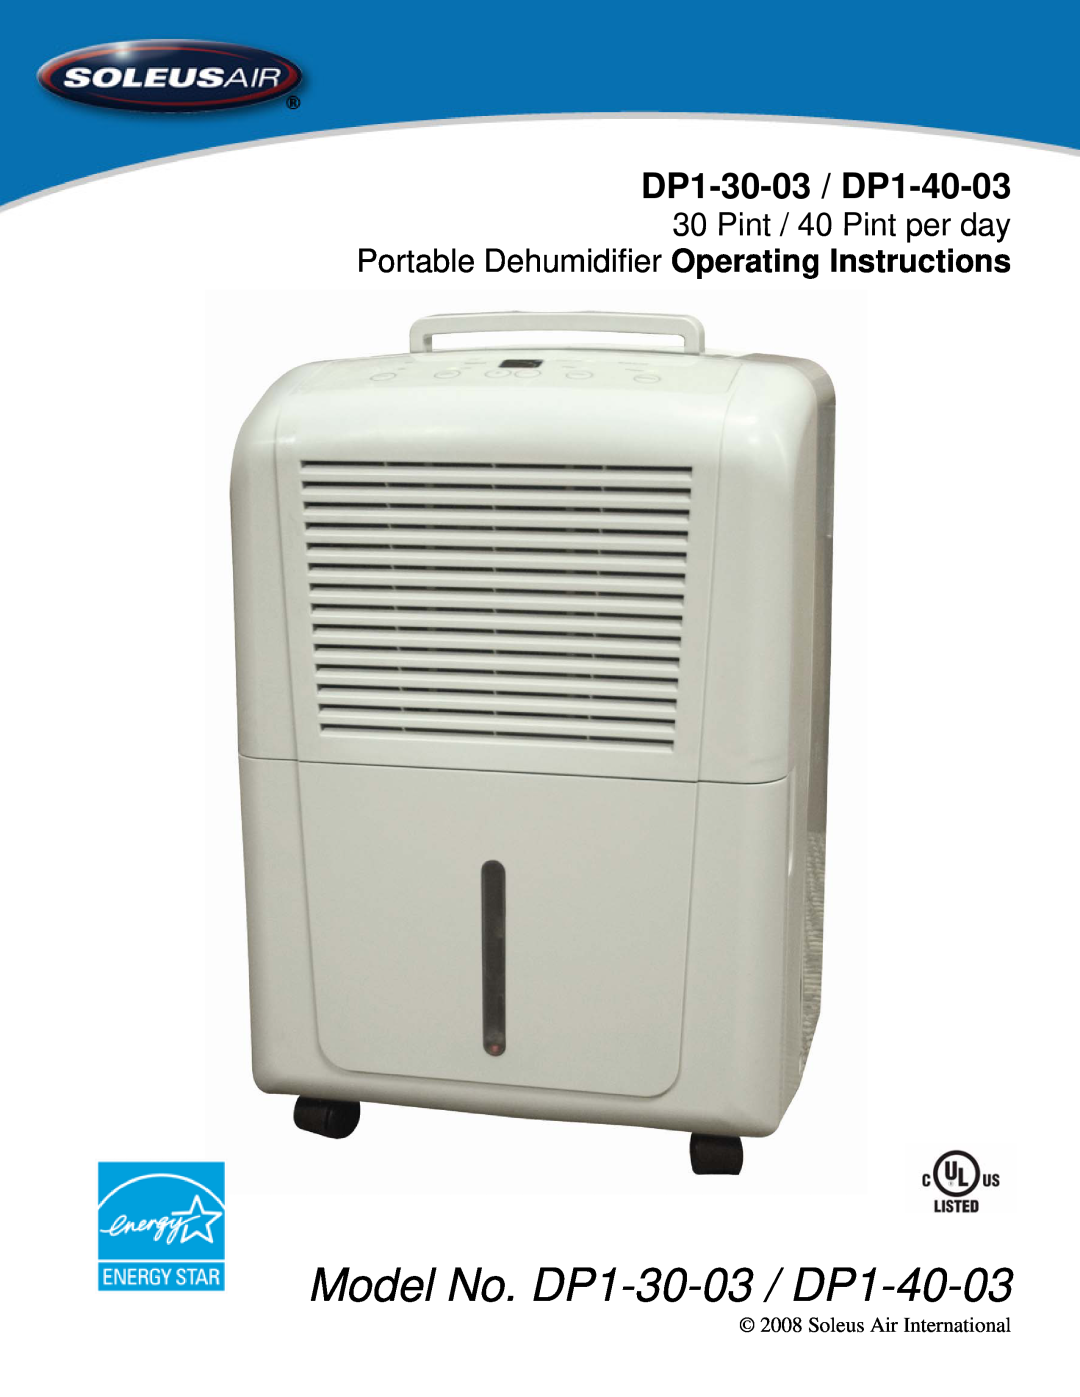 Soleus Air manual Model No. DP1-30-03 / DP1-40-03, Pint / 40 Pint per day, Portable Dehumidifier Operating Instructions 